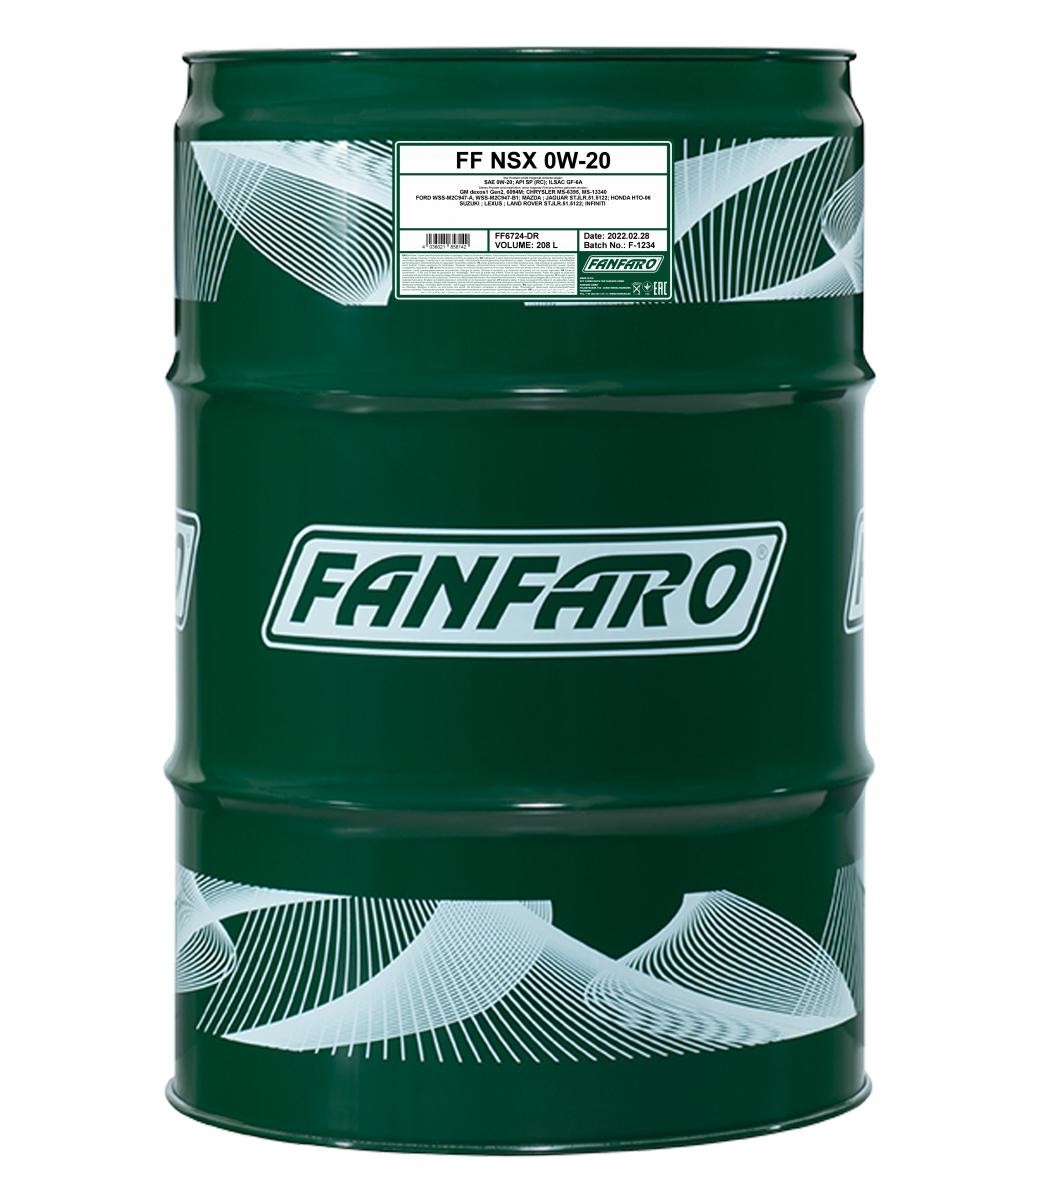 FF6724-DR FANFARO NSX 0W-20, 208l Motoröl FF6724-DR günstig kaufen